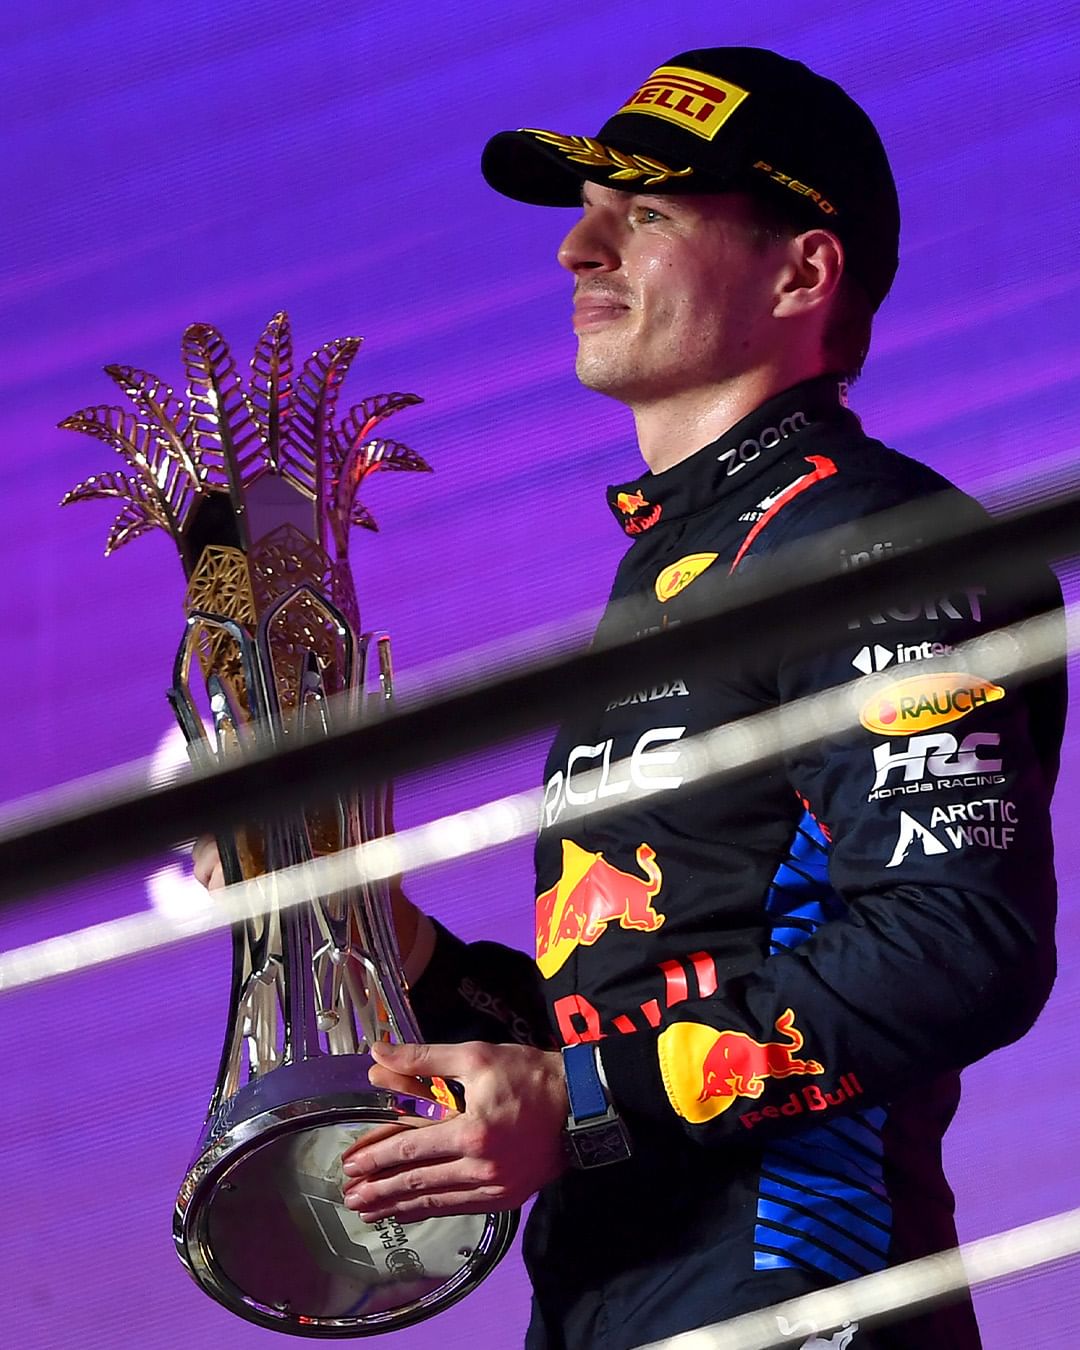 红牛车队,Red Bull Racing,沙特阿拉伯大奖,冠亚军,Max Verstappen